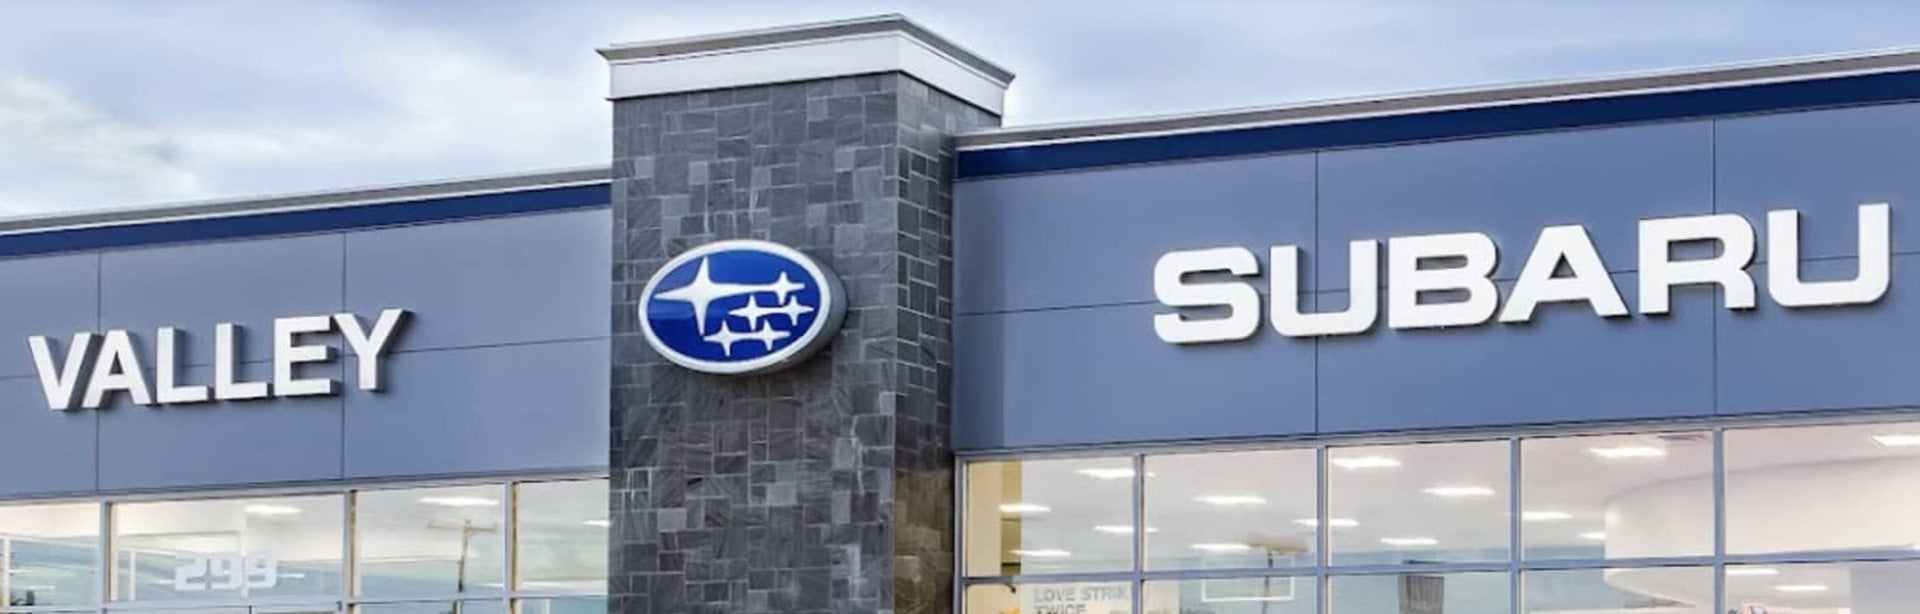 Valley Subaru of Longmont | Complete Subaru Dealership for Northern Colorado